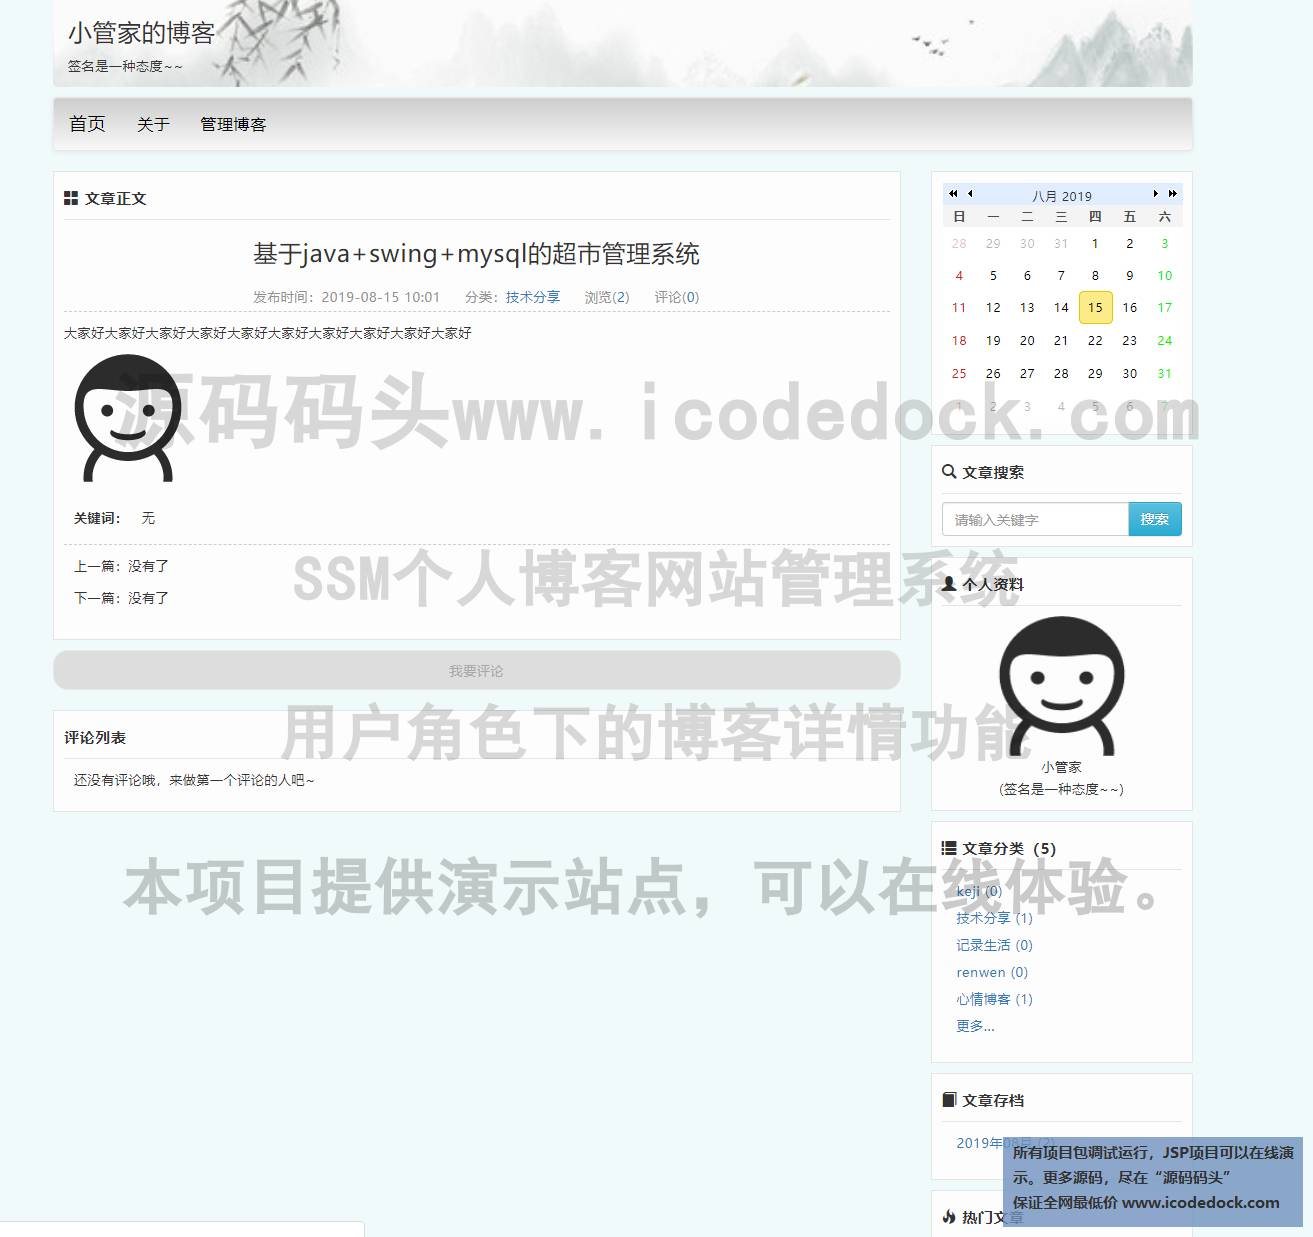 源码码头-SSM个人博客网站管理系统-用户角色-博客详情